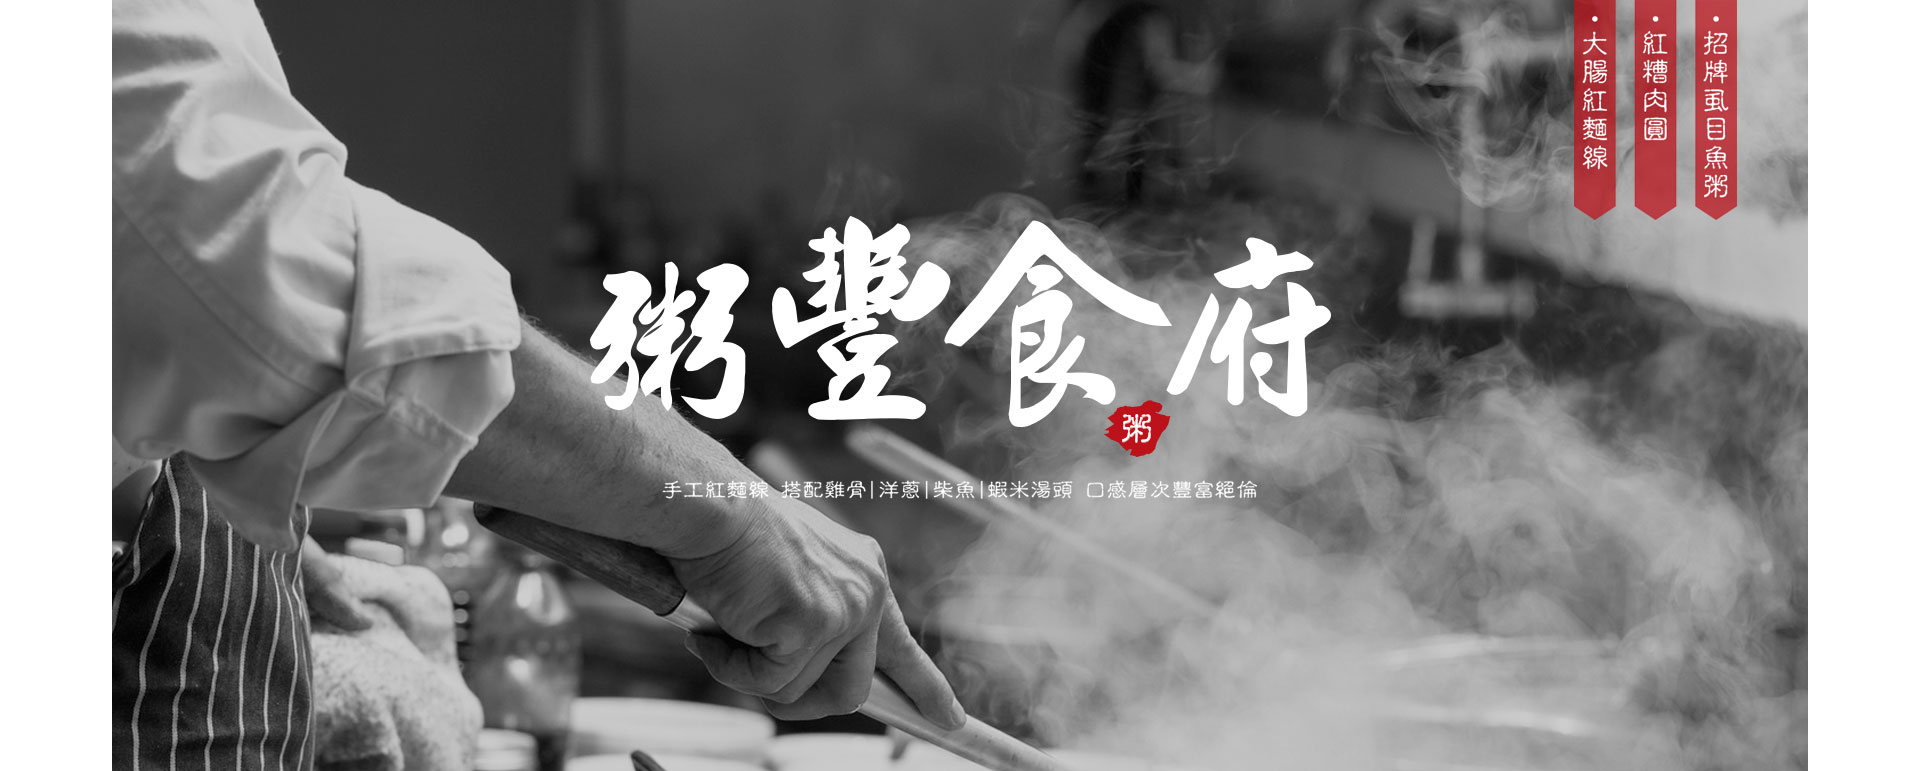 中式餐廳餐飲業LOGO設計案例